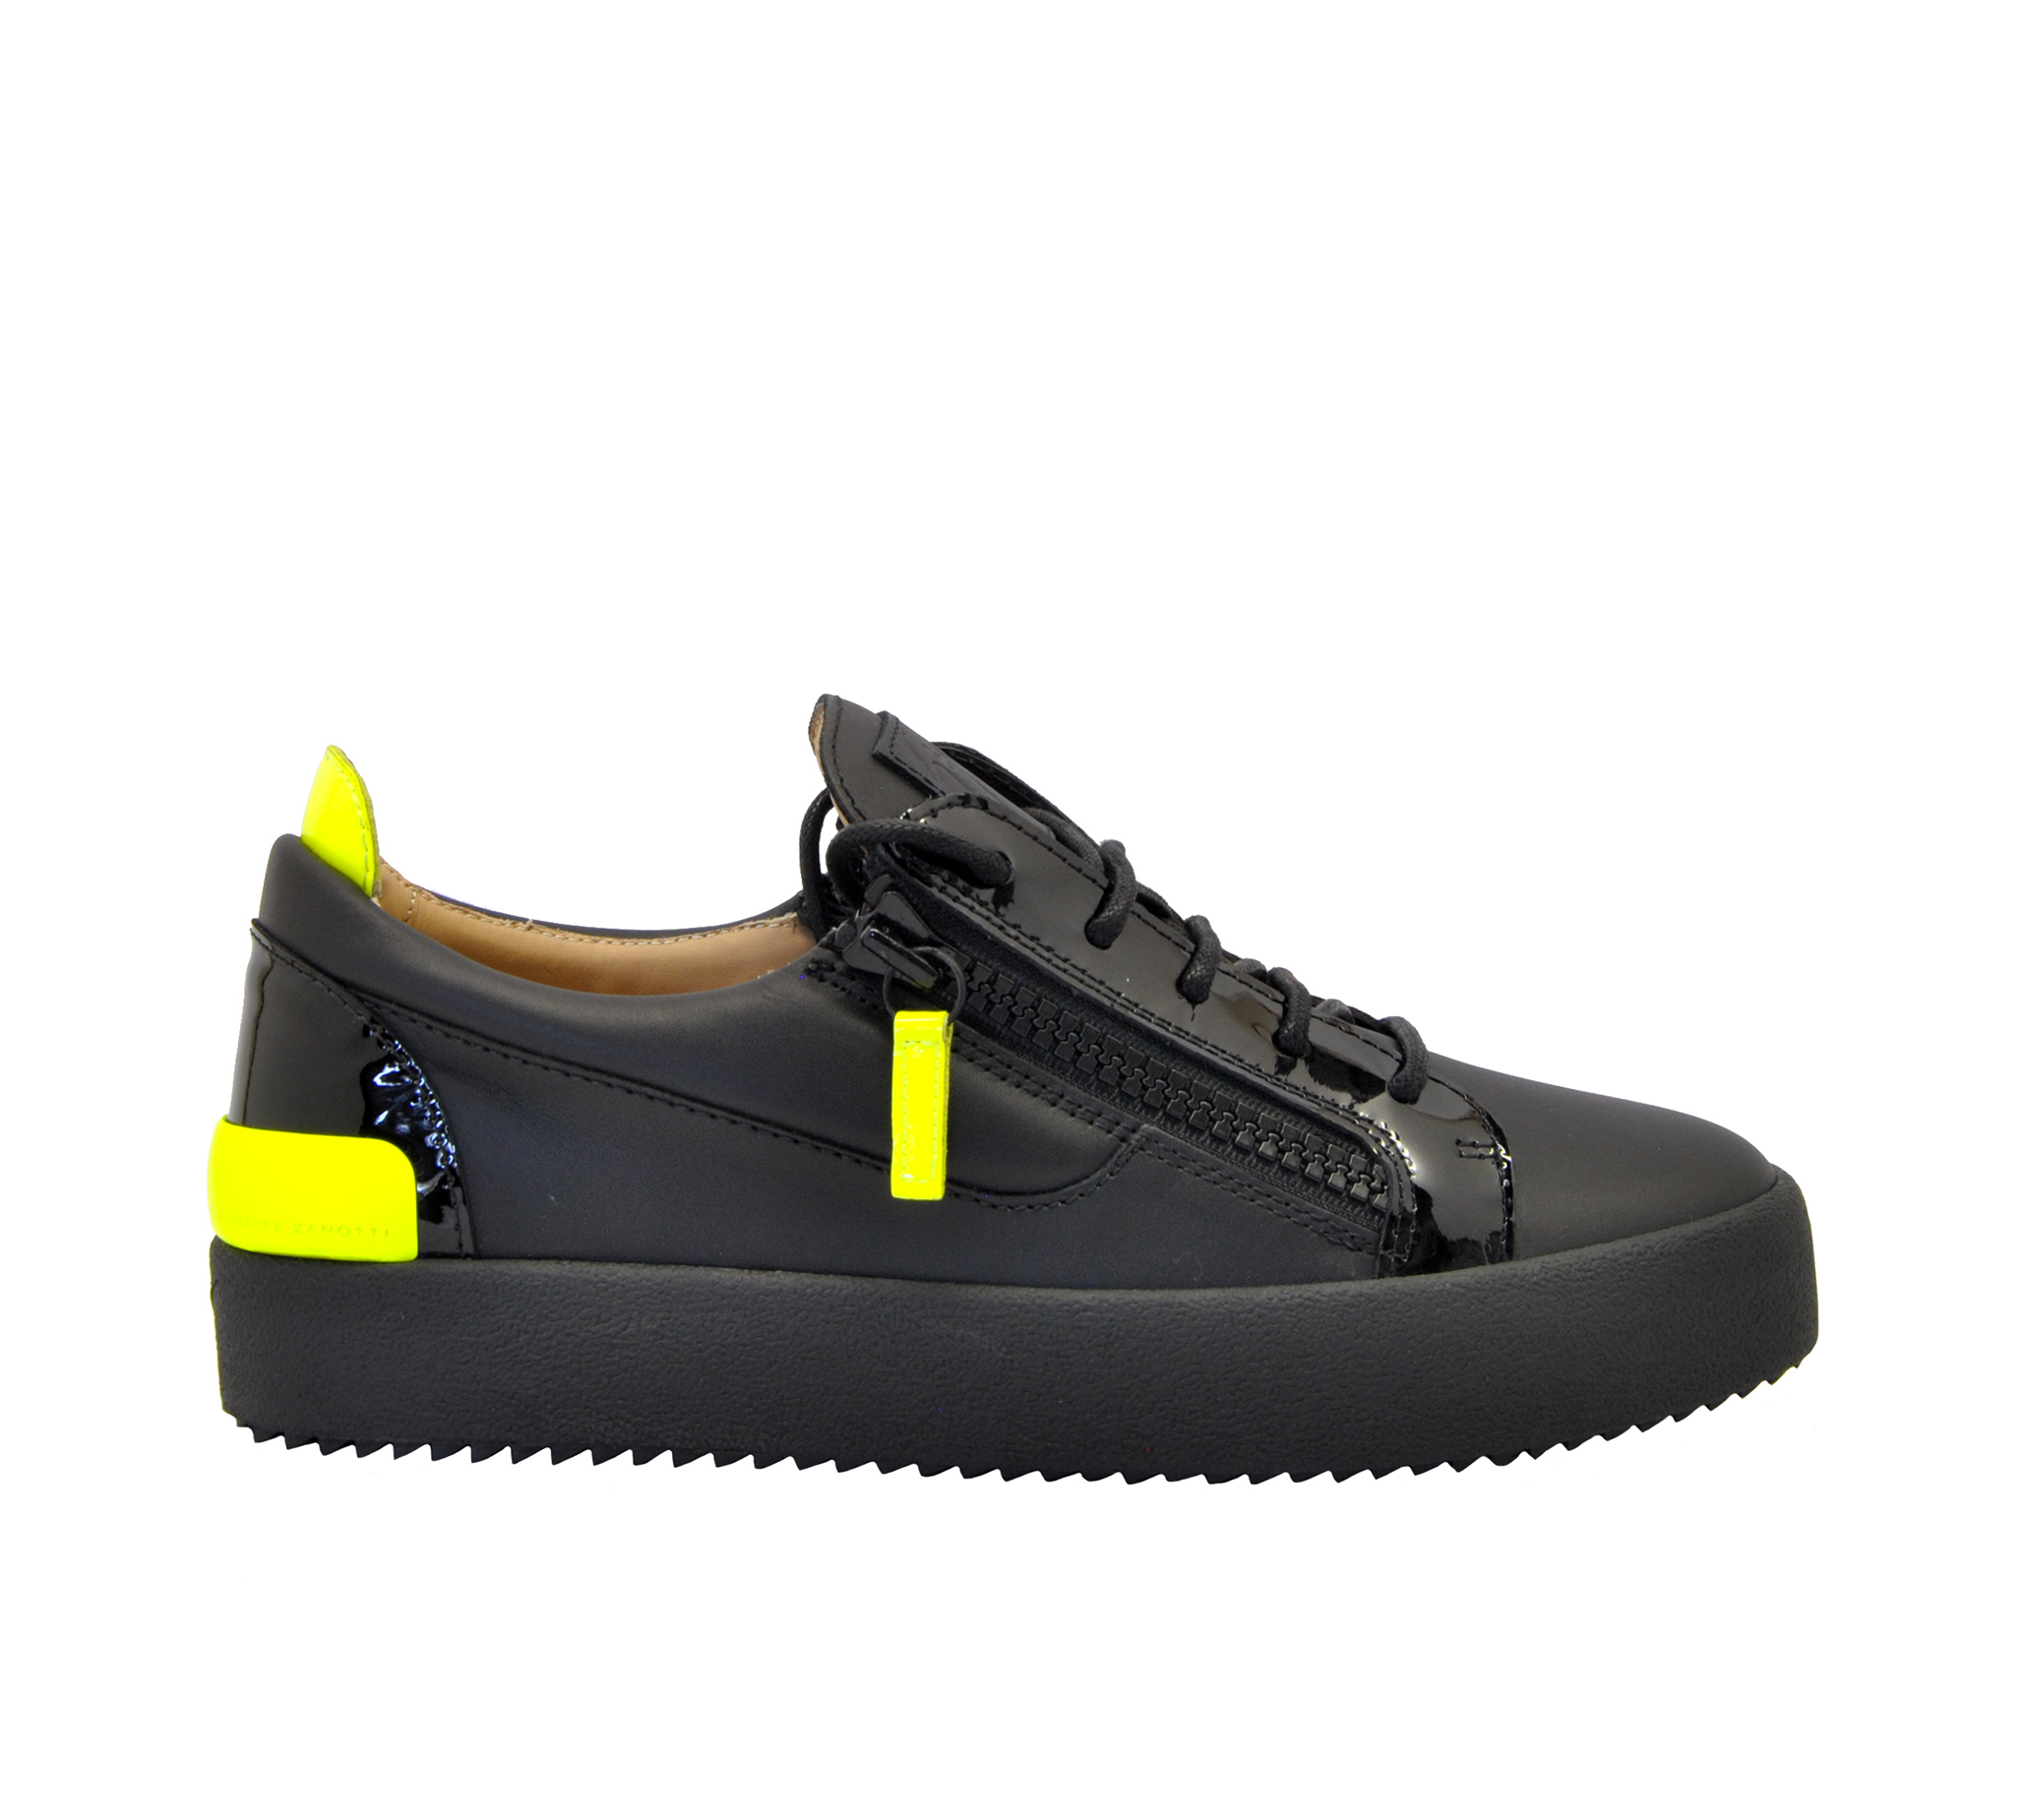 Giuseppe zanotti - Sneakers nero giallo fluo - Mary Claud